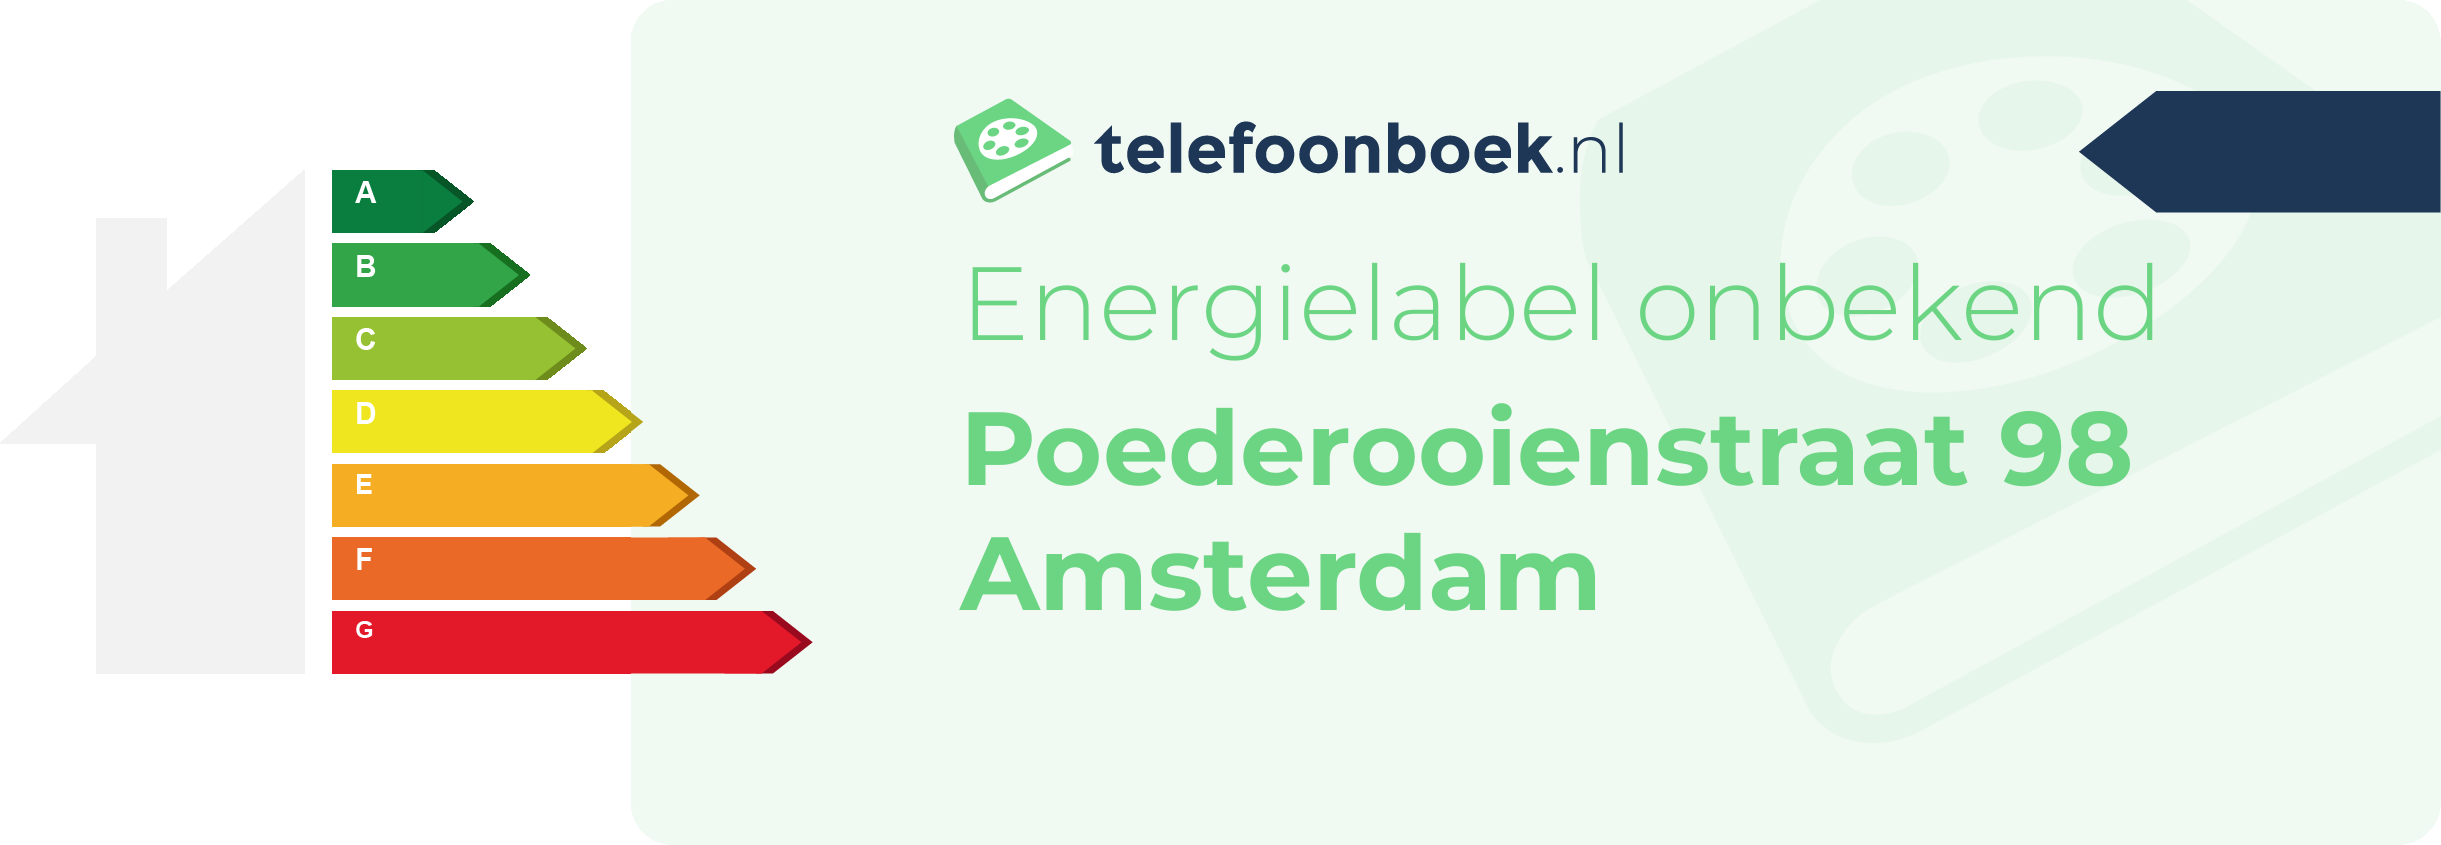 Energielabel Poederooienstraat 98 Amsterdam